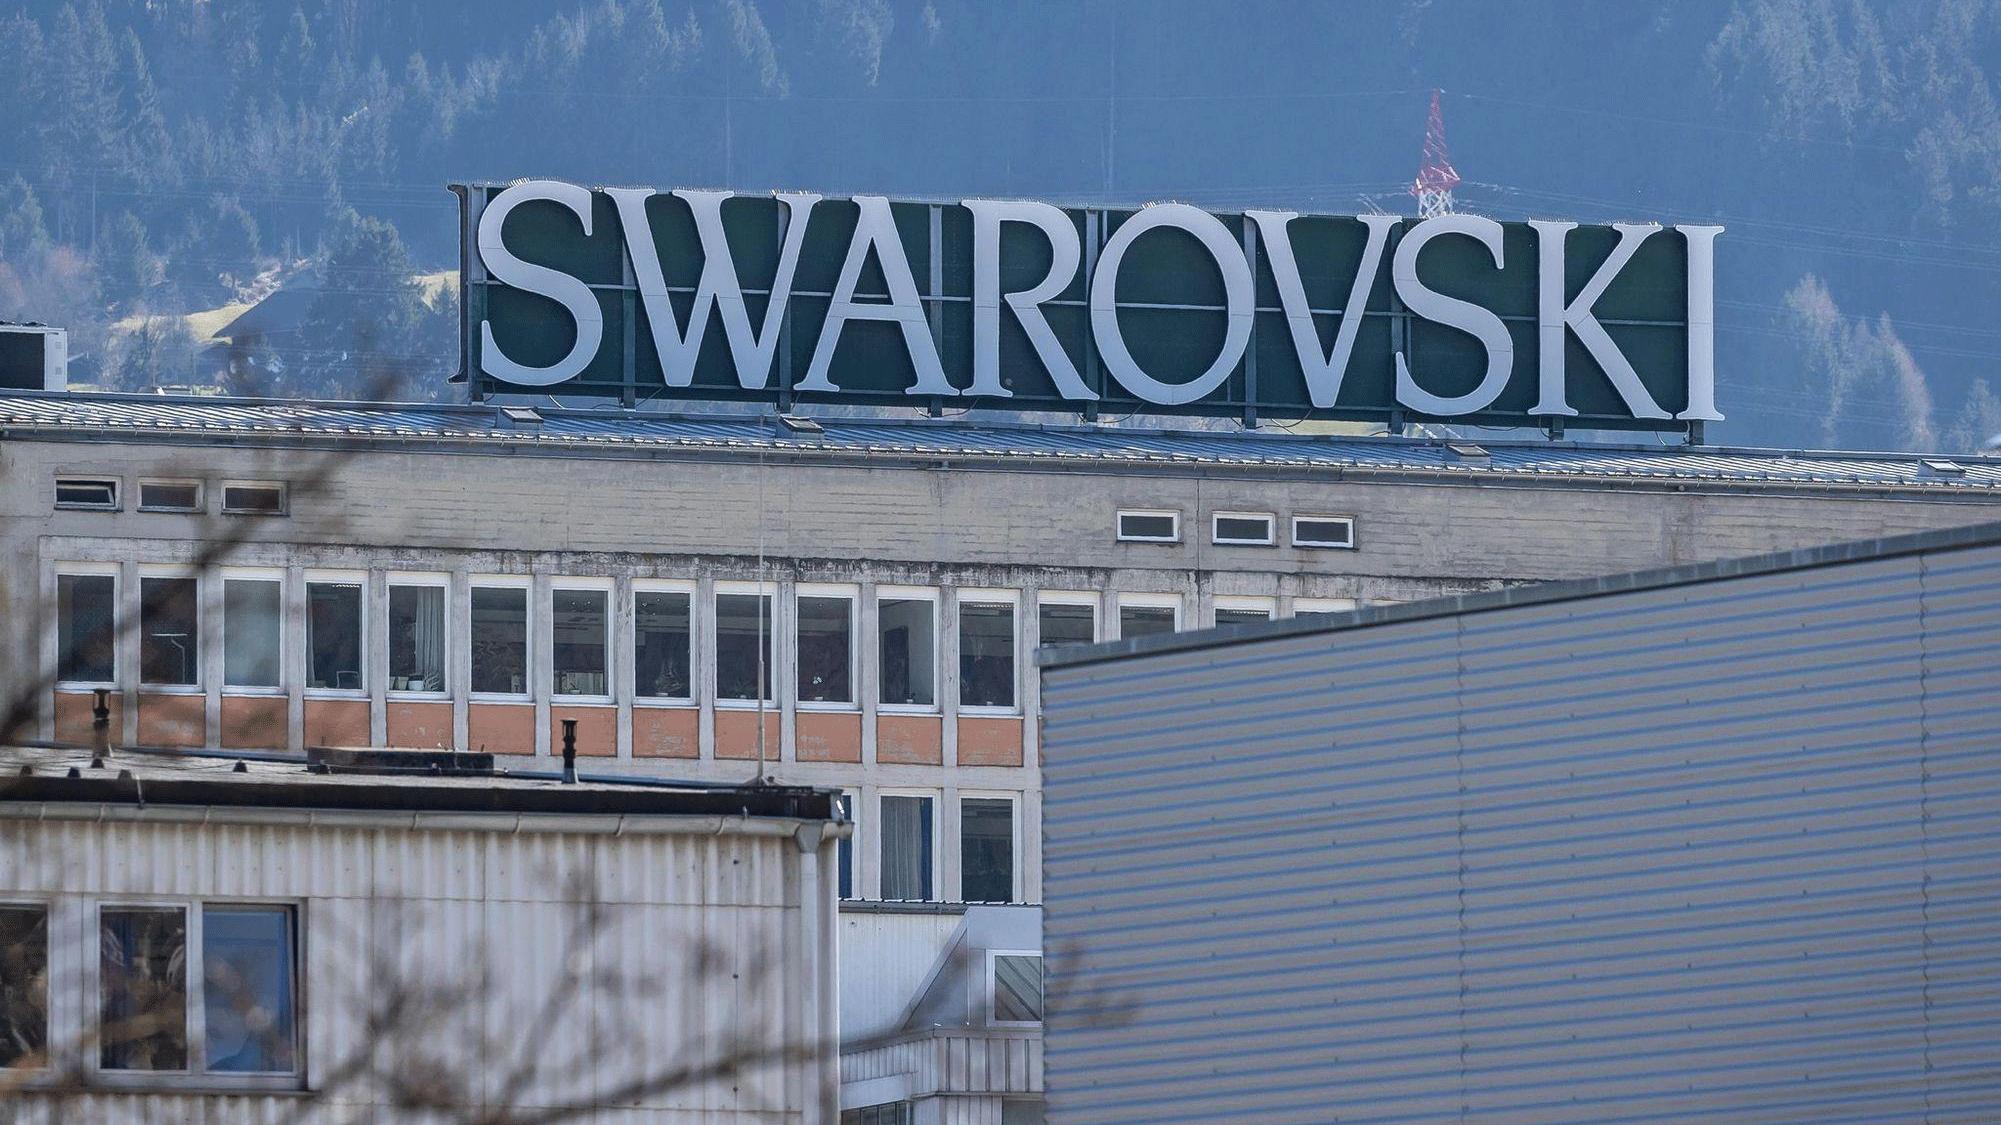 تأسست سواروفسكي قبل 125 عاما في فاتنز في النمسا